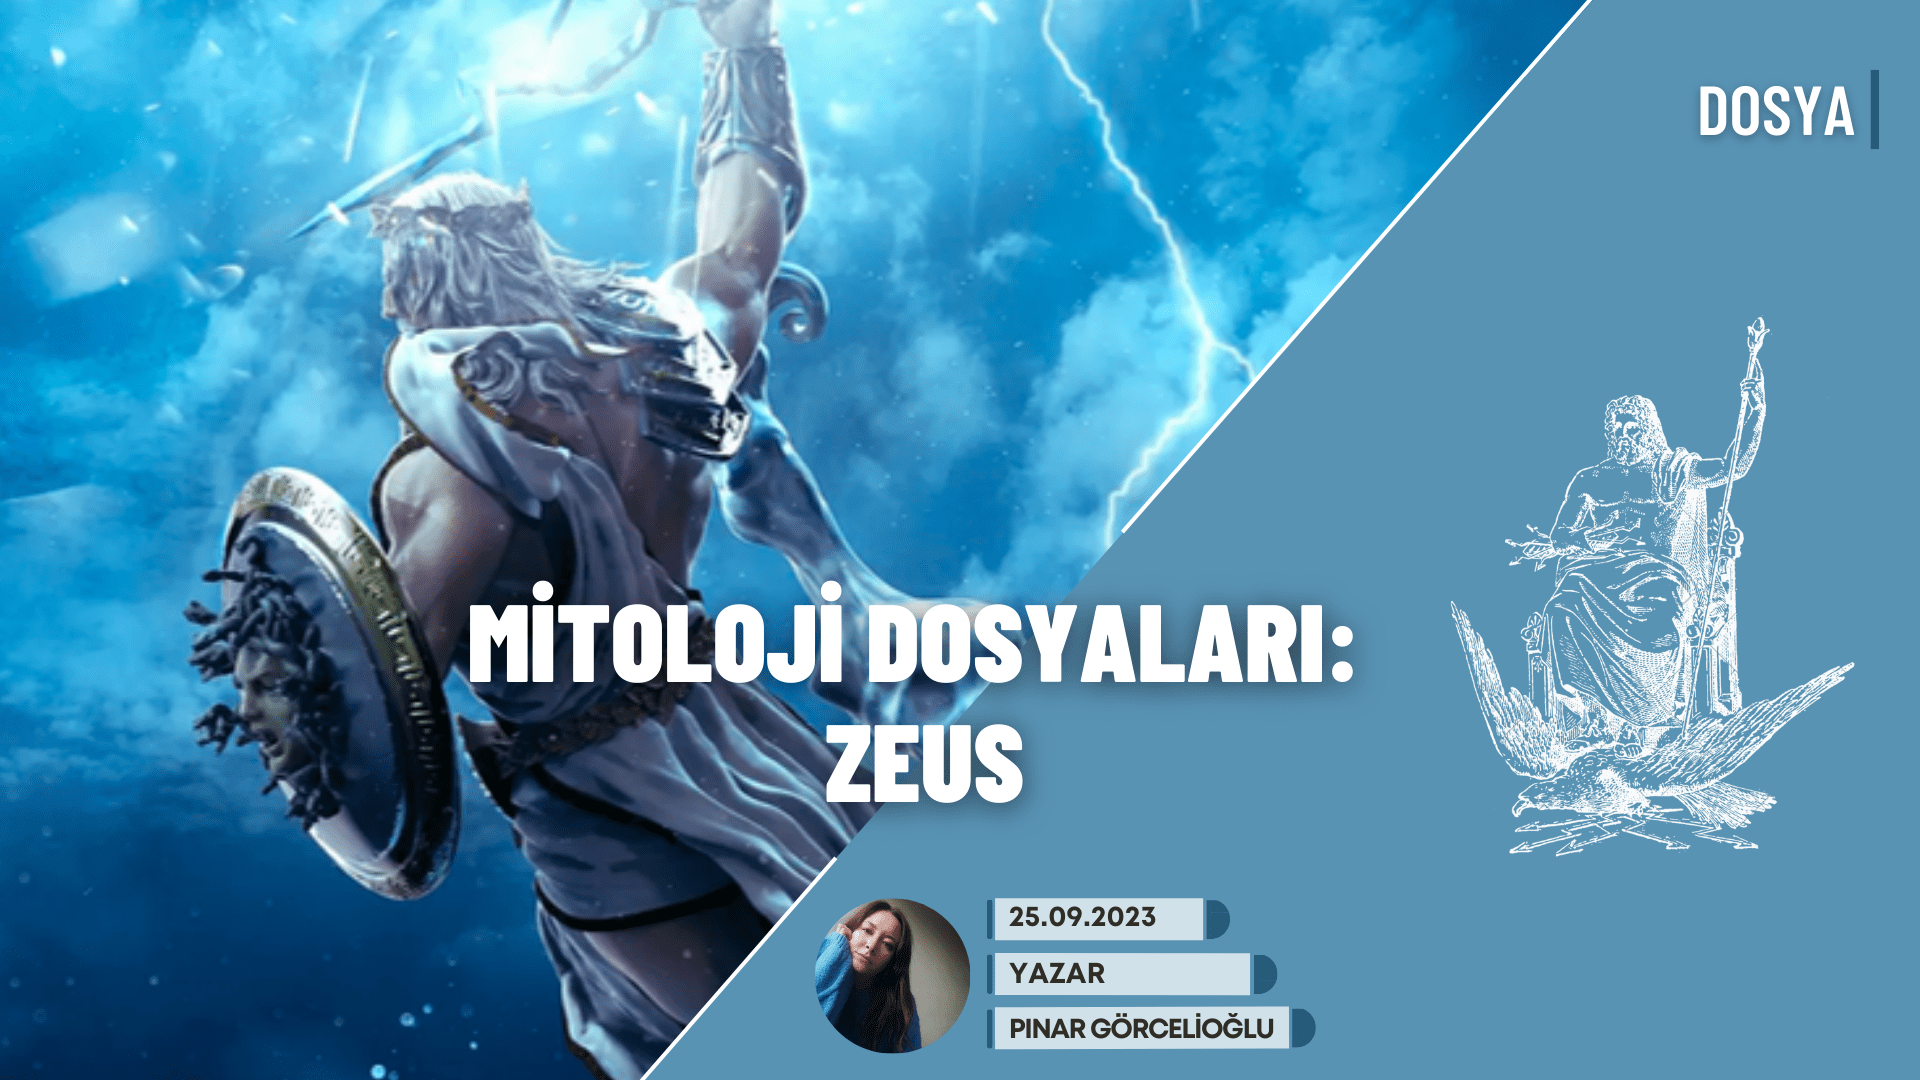 Mitoloji Dosyaları: Tanrıların Kralı Zeus